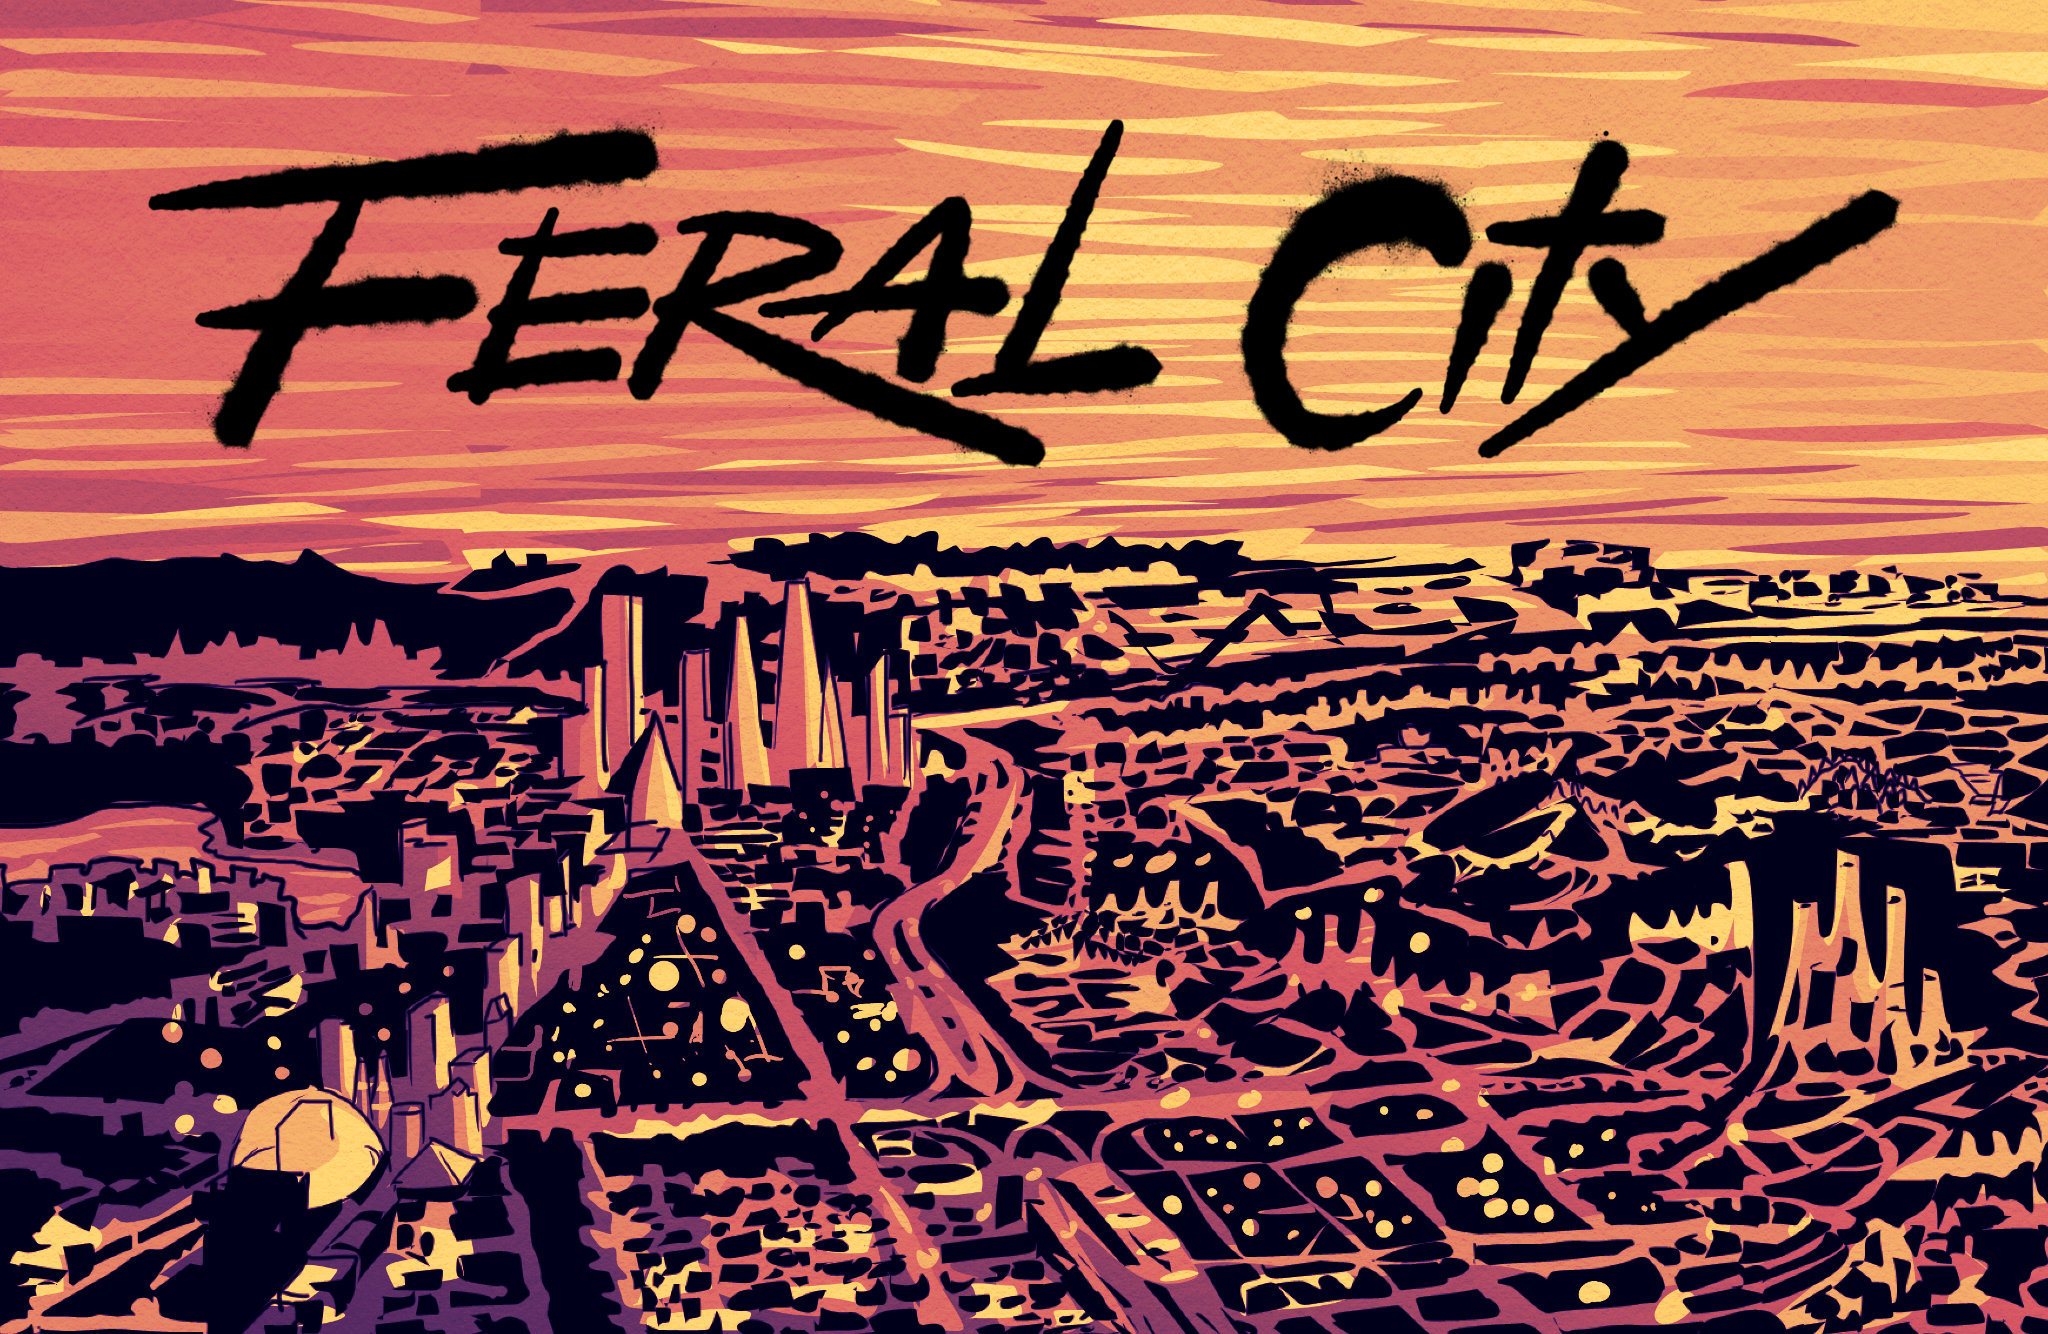 Weird Luck: Feral City Begins